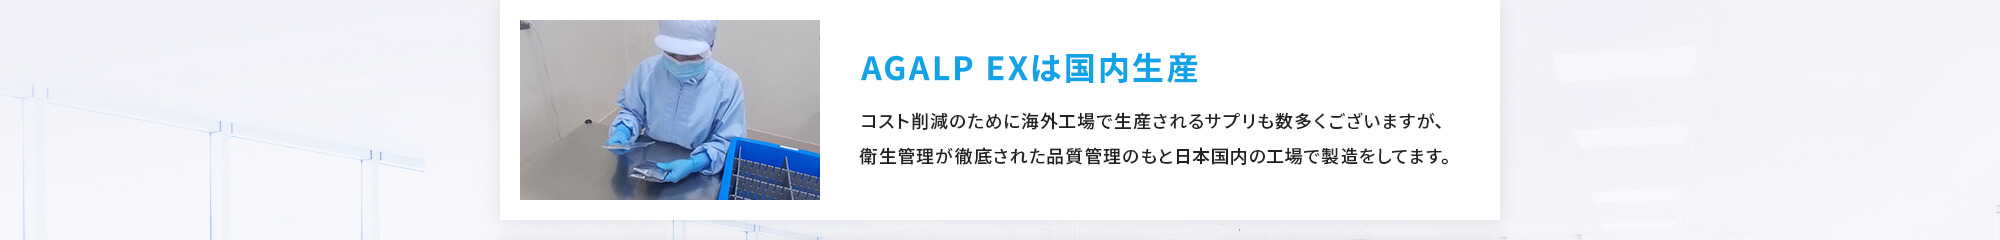 [AGALP EXは国内生産] コスト削減のために海外工場で生産されるサプリも数多くございますが、衛生管理が徹底された品質管理のもと日本国内の工場で製造をしてます。